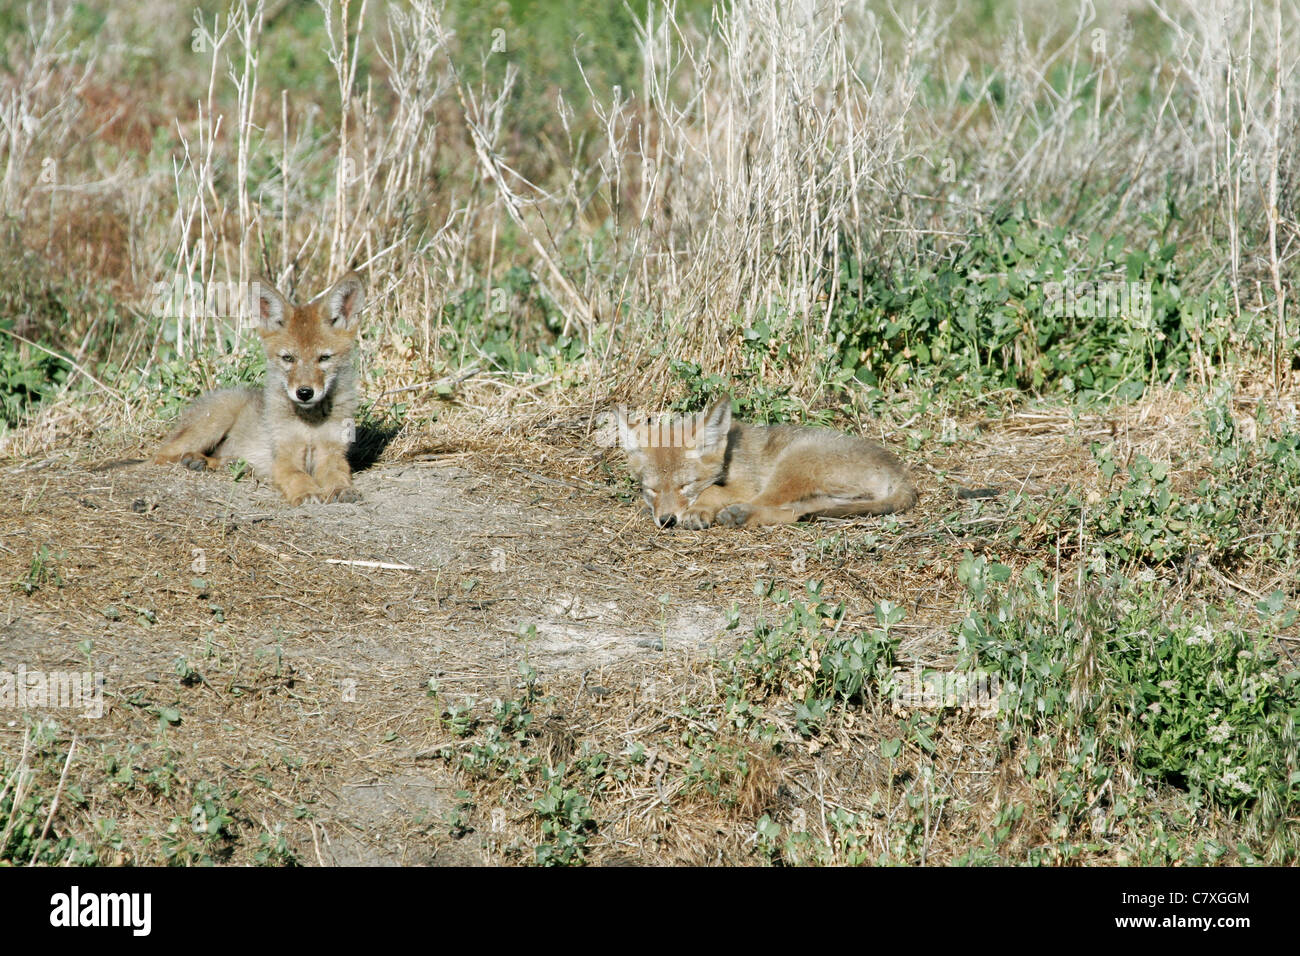 Deux petits coyotes allongé au soleil, l'un est le contact visuel avec l'appareil photo. Banque D'Images